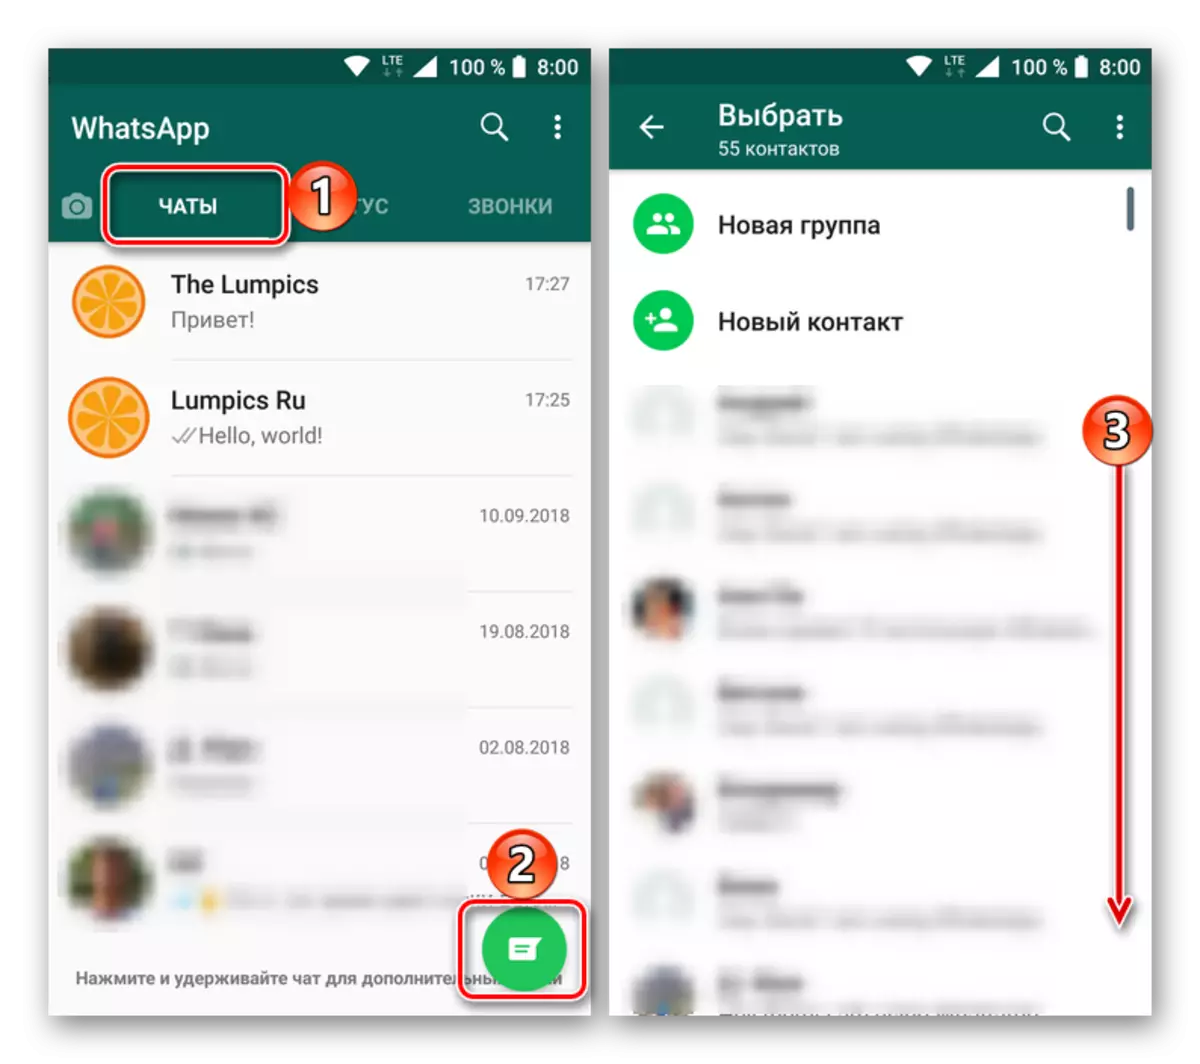 Ouvert pour afficher la liste de contacts dans l'application WhatsApp pour Android